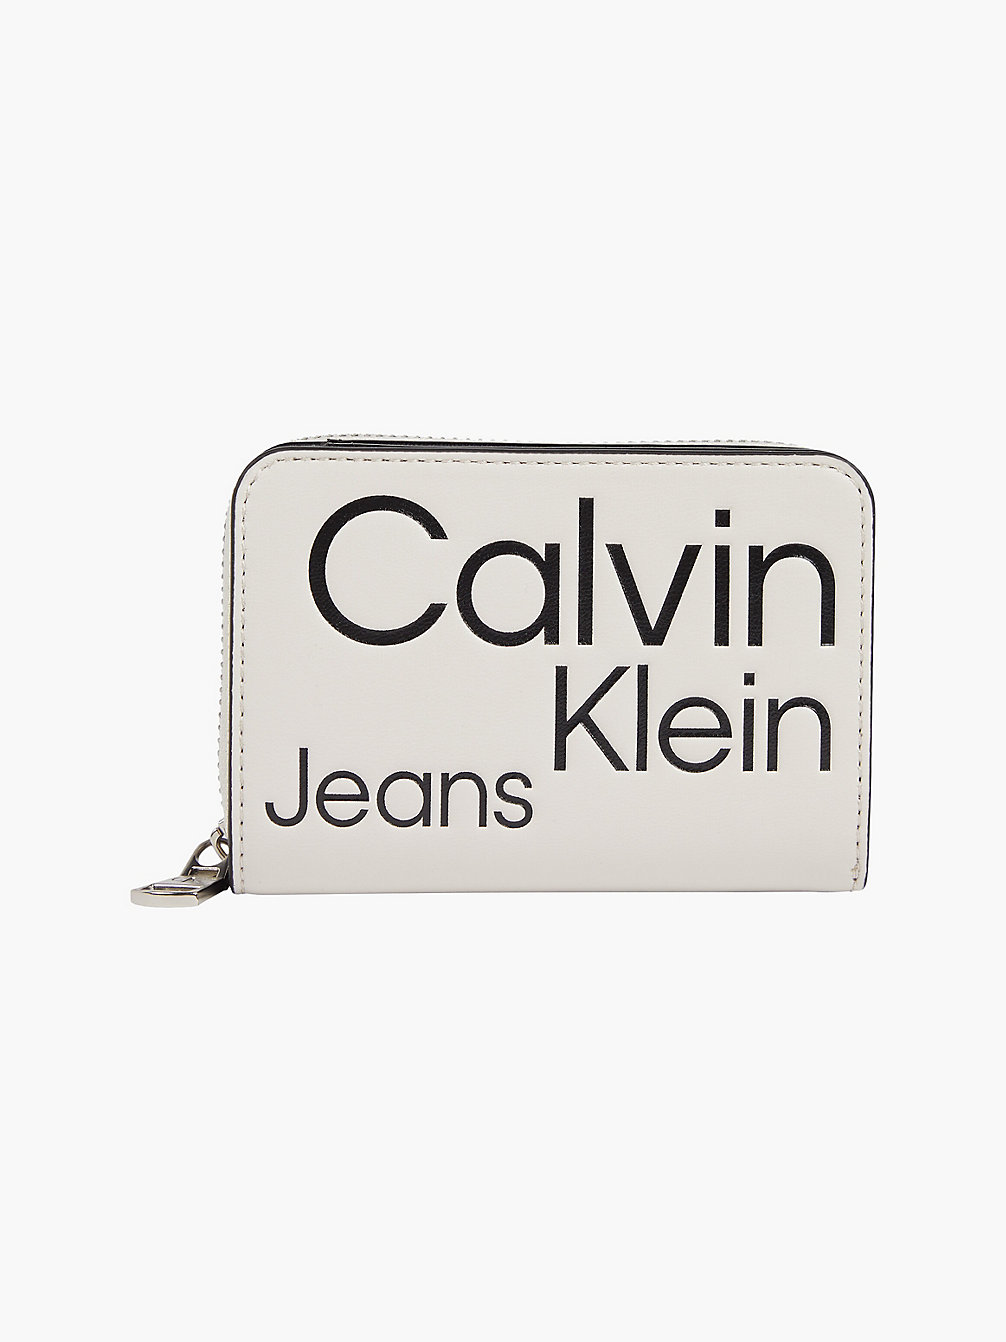 BEIGE AOP Rfid-Portemonnee Met Rits Rondom En Logo undefined dames Calvin Klein